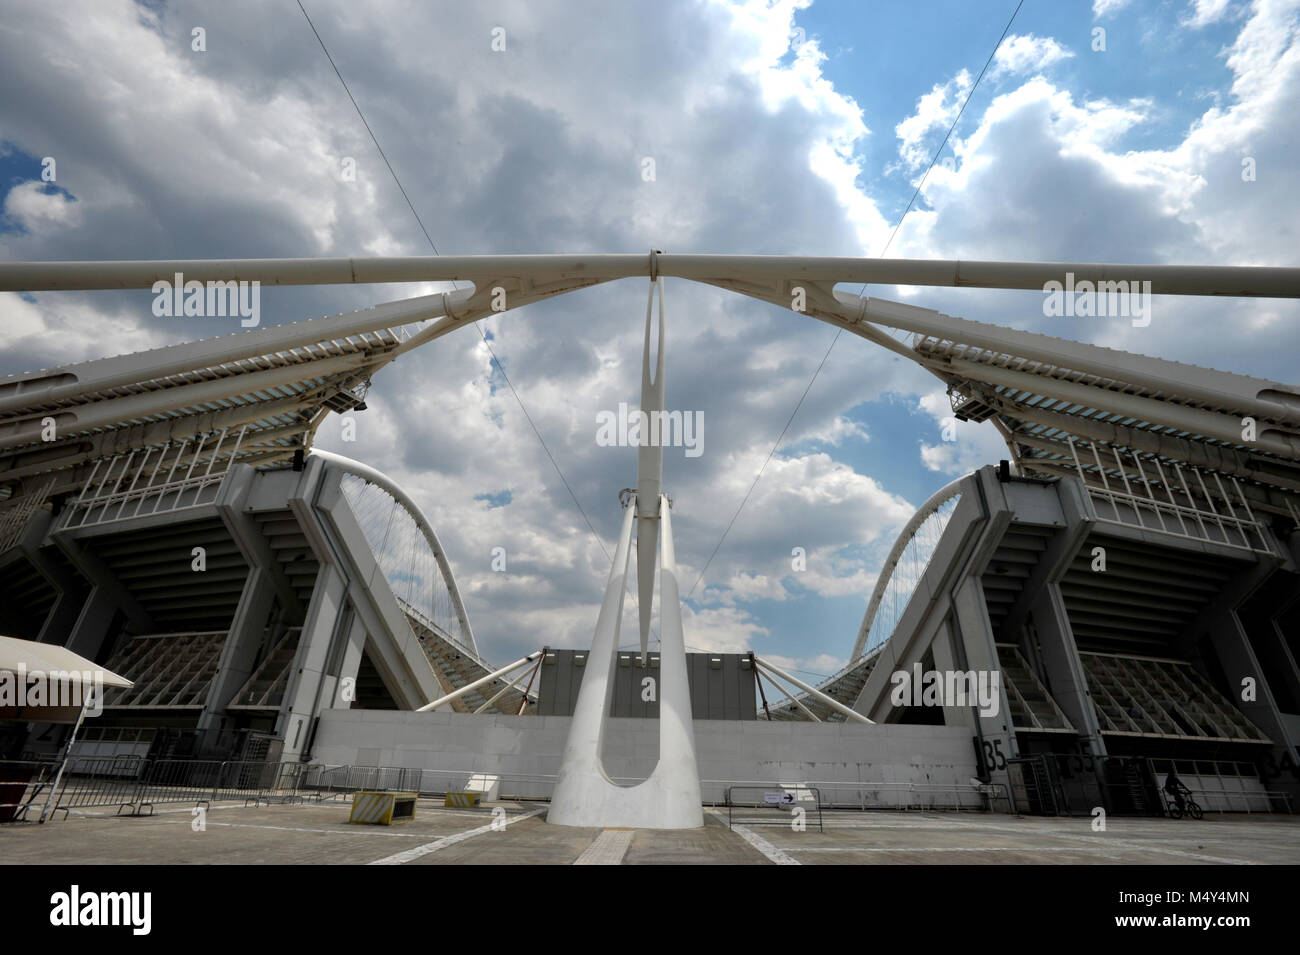 Algunas estructuras arquitectónicas de la Villa Olímpica en los Juegos de la XXVIII Olimpiada tuvo lugar en Atenas en Grecia a partir de agosto de 2004 Foto de stock